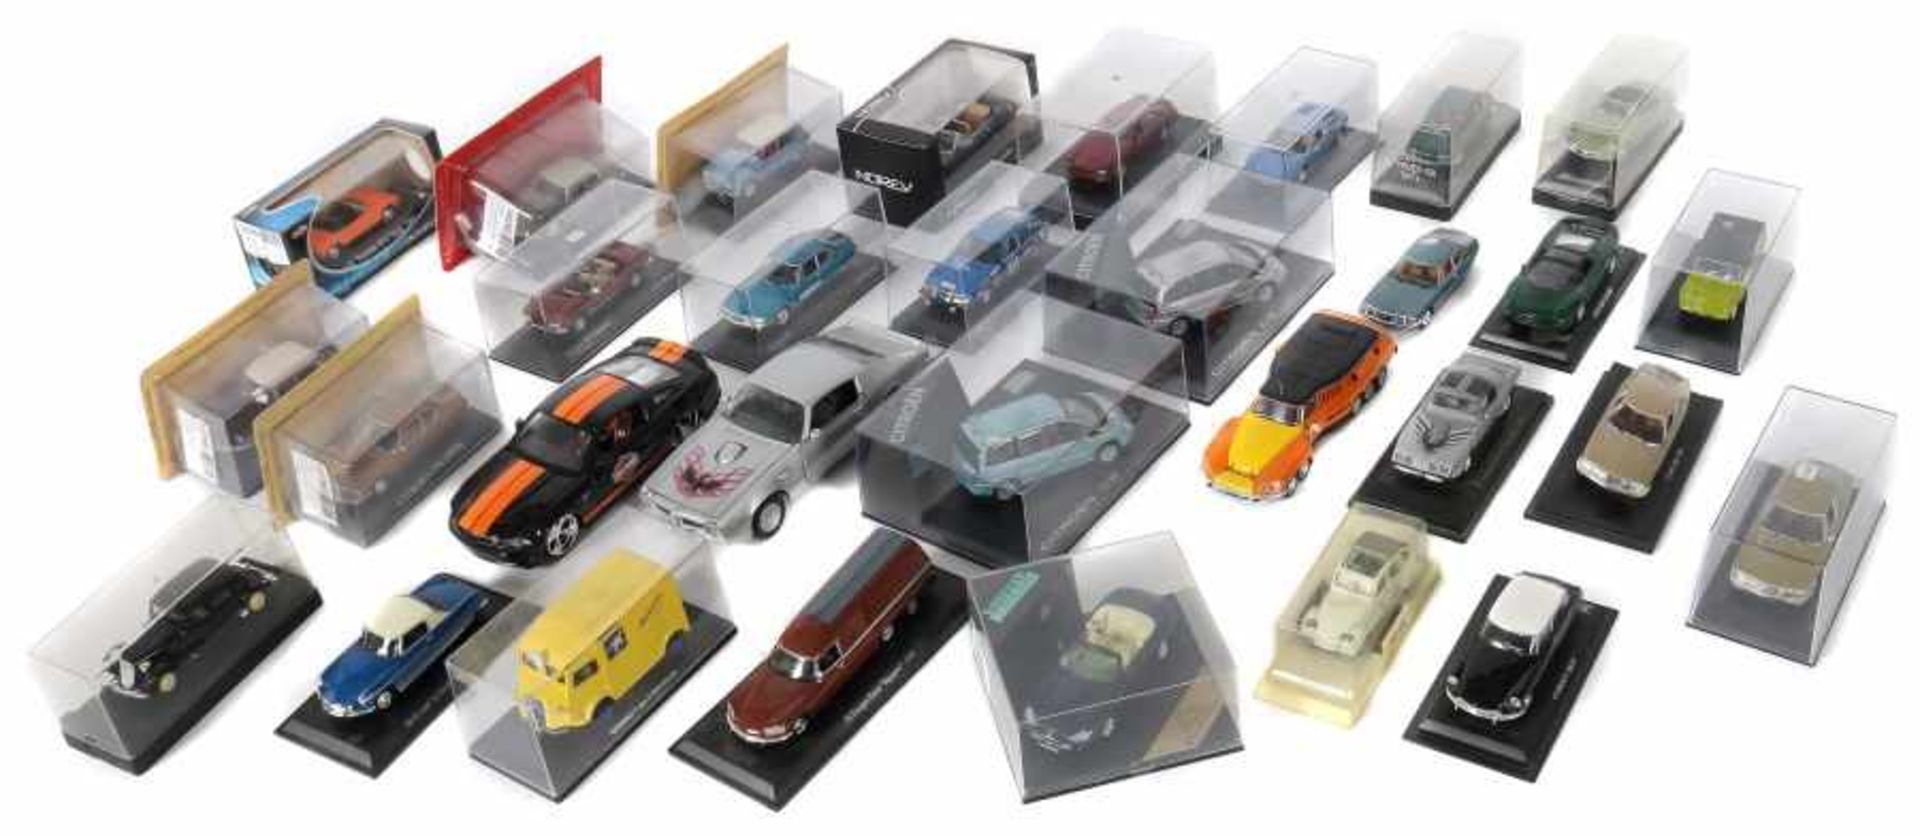 31 Modellautos unterschiedl. Hersteller, Metall, part. Kunststoff, lackiert, 19x 1:43 und 2x 1:24;